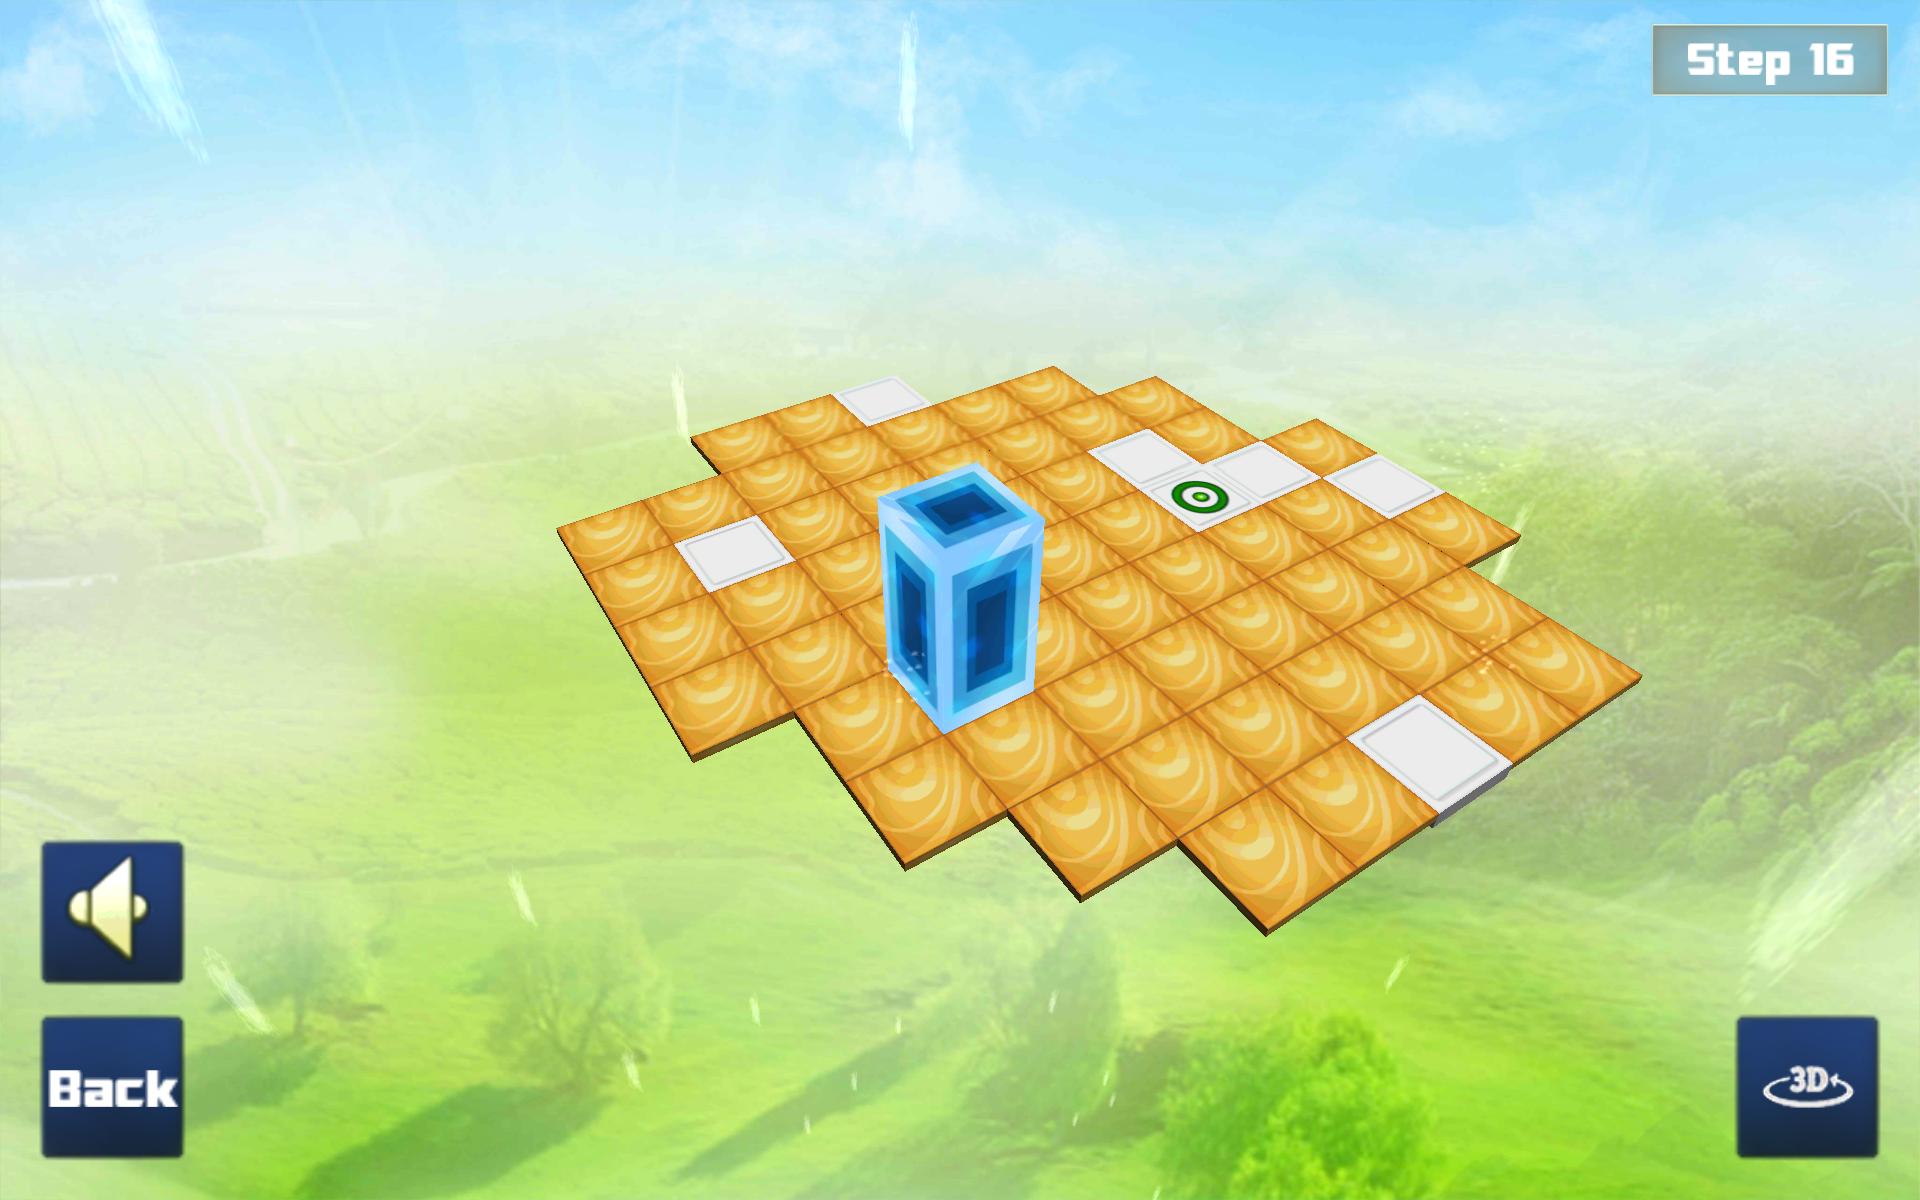 Get cube. Smart Cube meme.